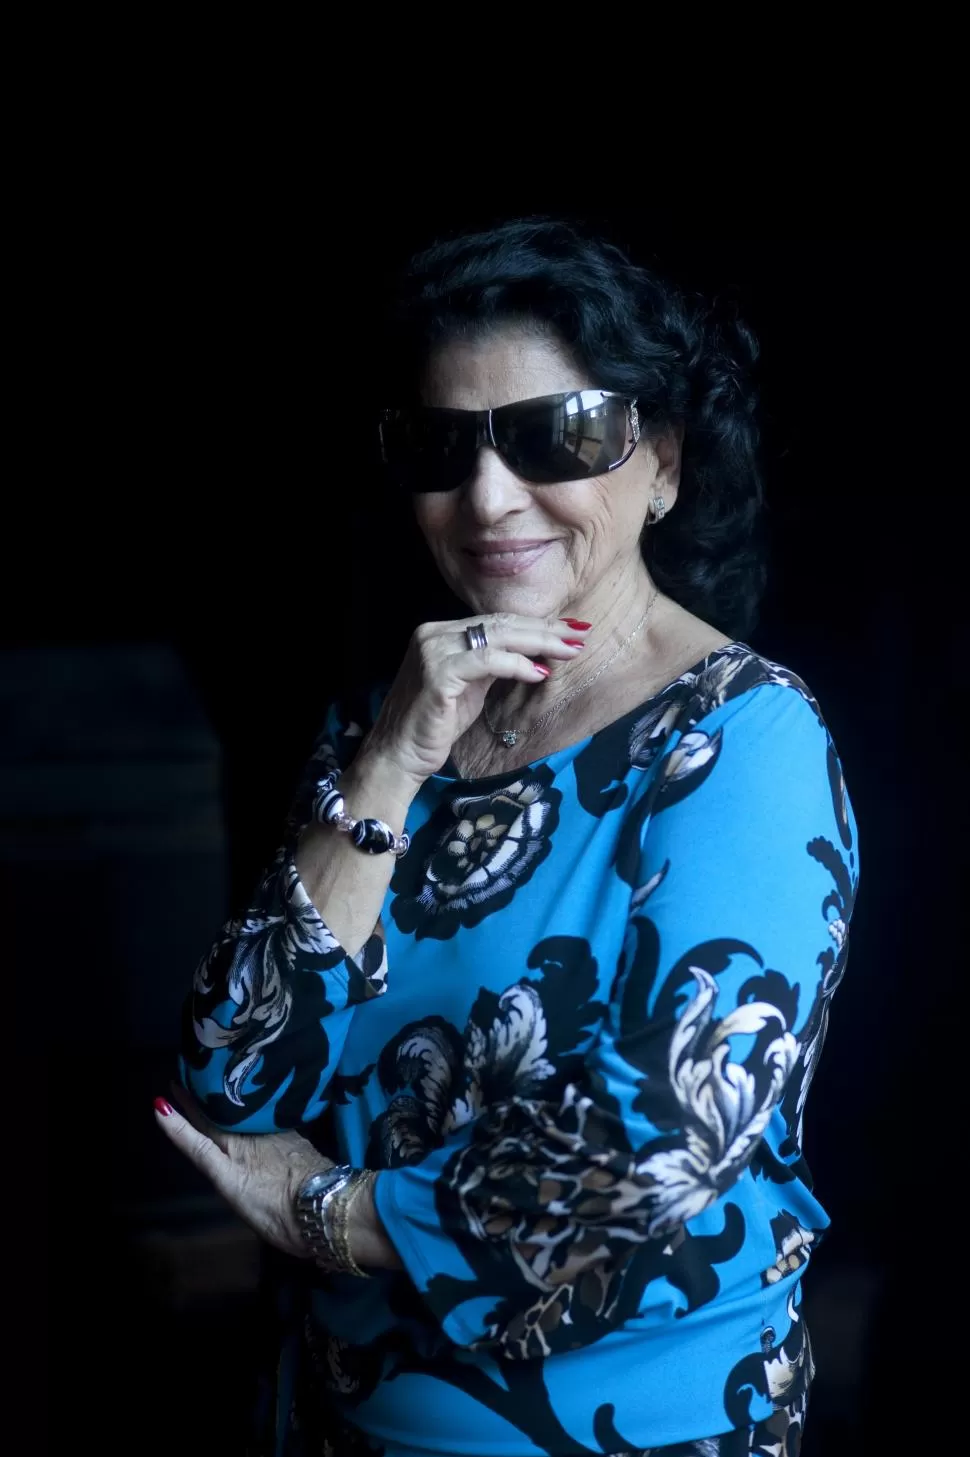 EN TUCUMÁN. Carmen Flores posa durante su visita a LA GACETA. la gaceta / foto de diego aráoz